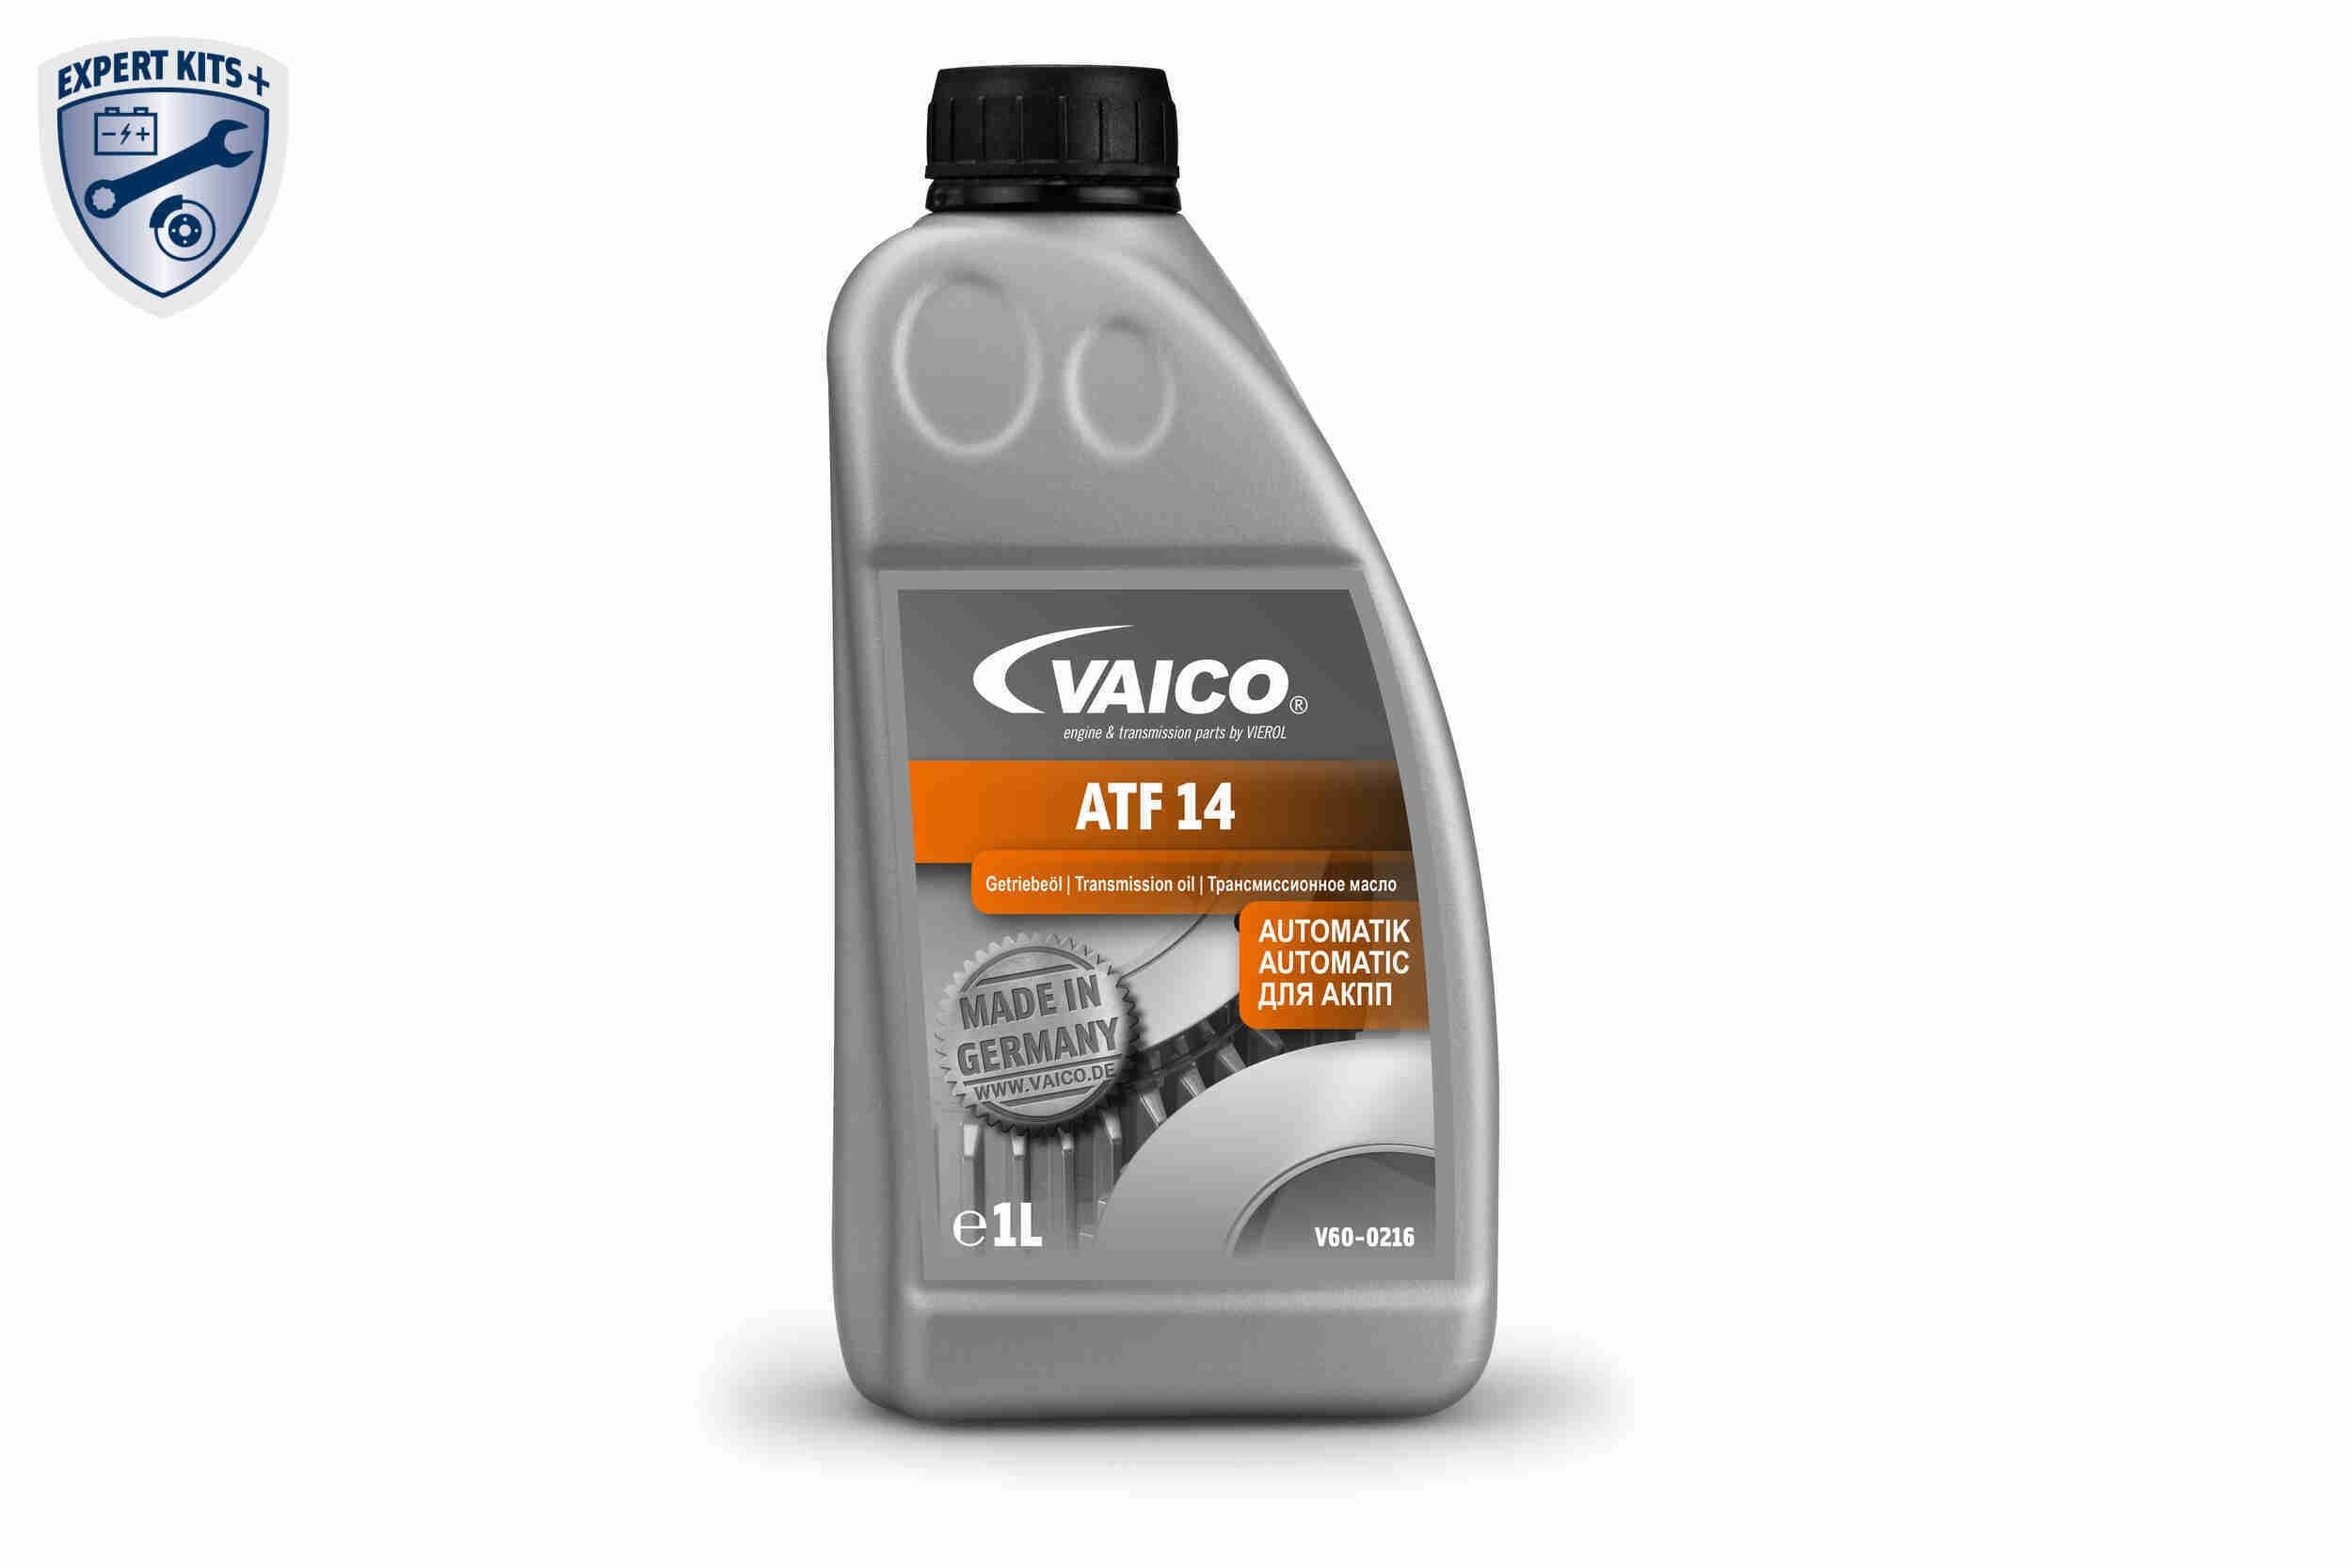 ATF Öl V60-0216 rund um die Uhr online kaufen